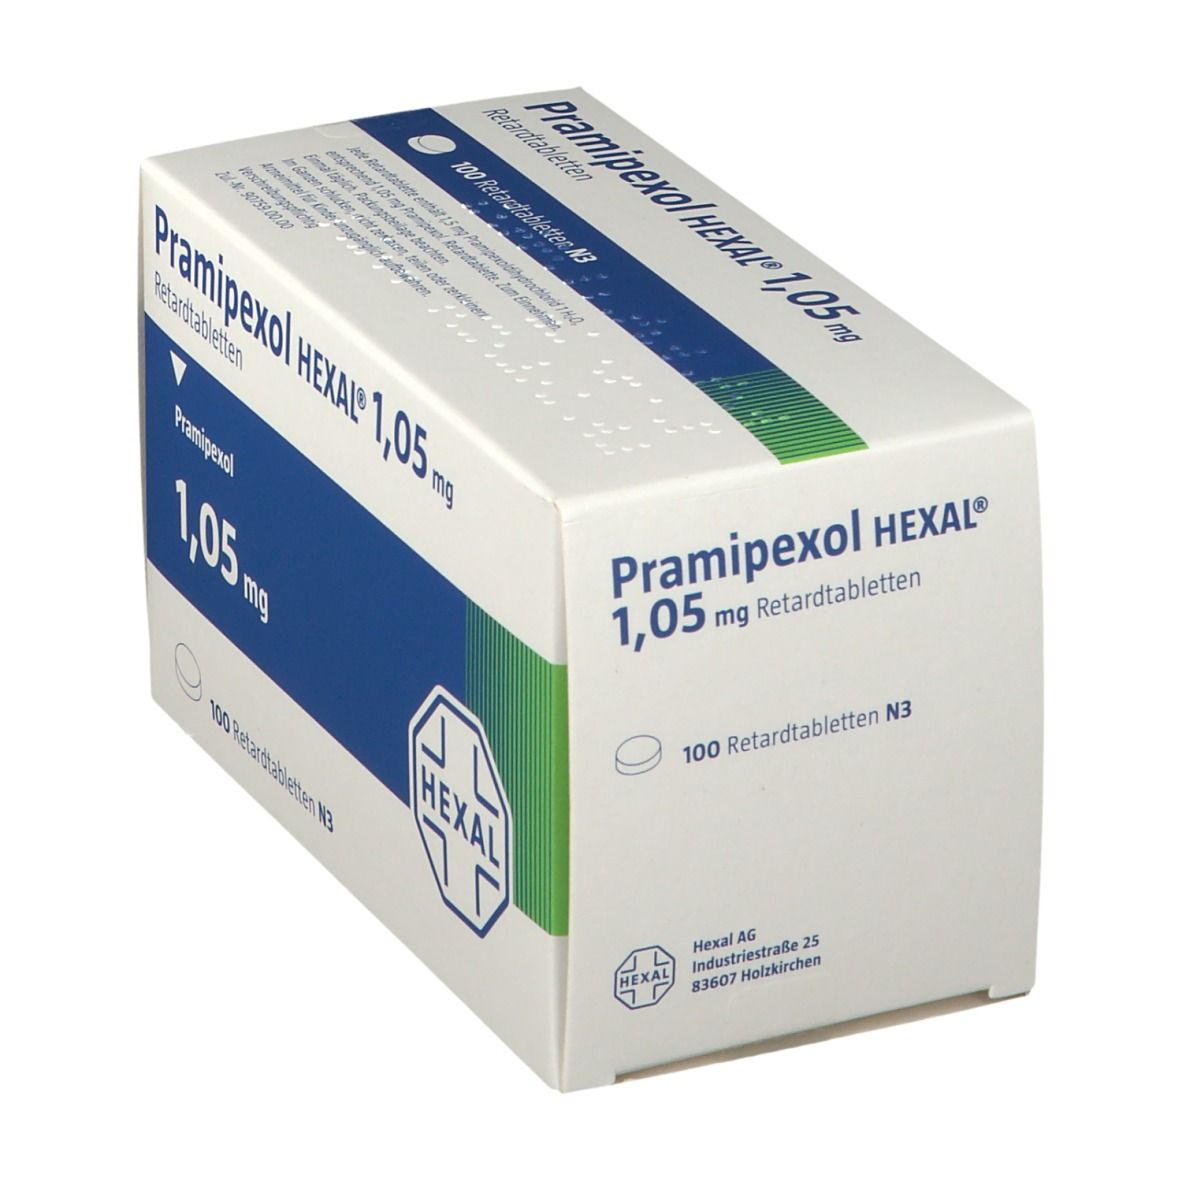 Pramipexol HEXAL® 1,05 mg